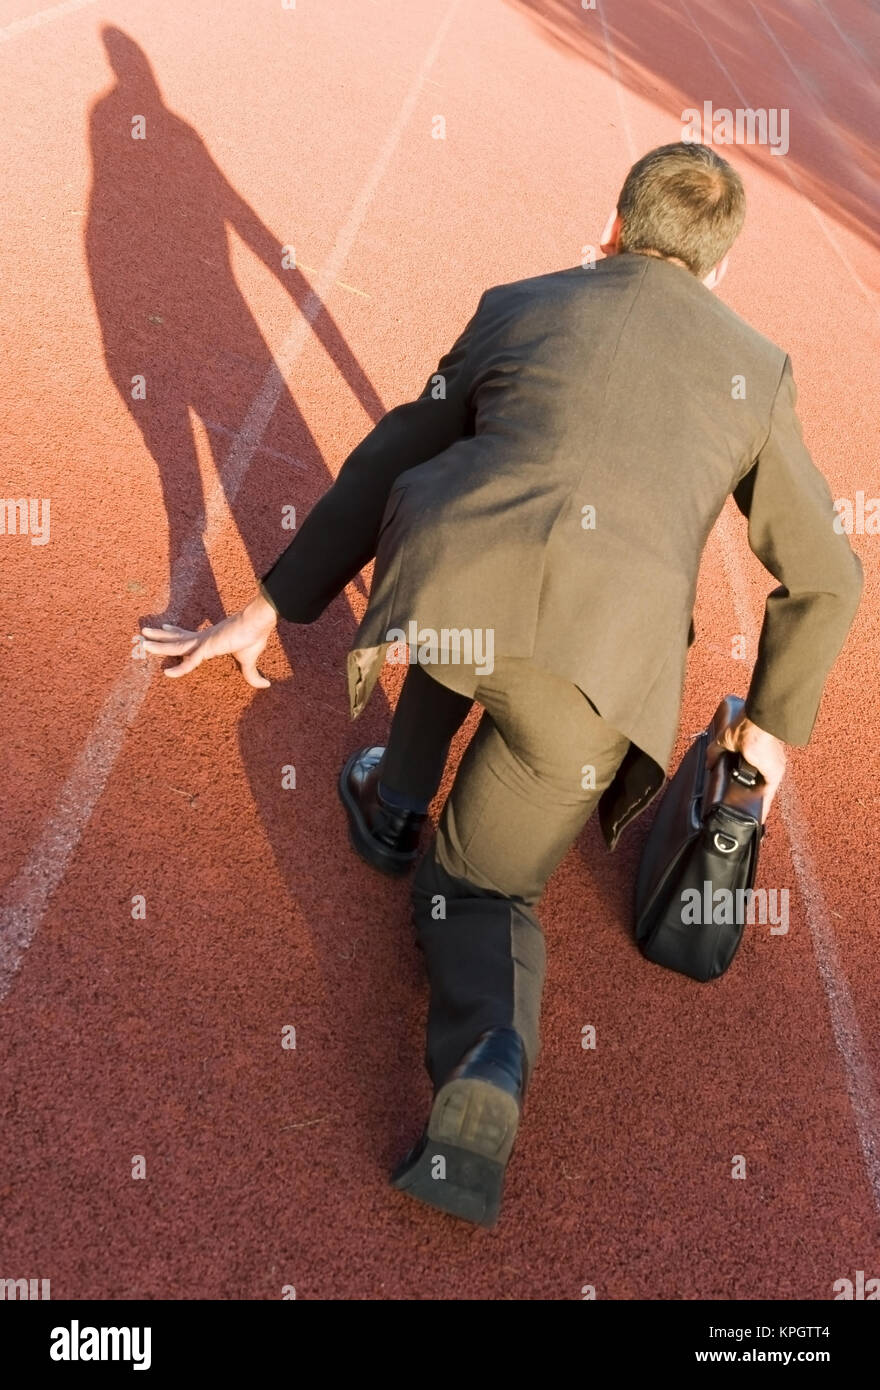 Model released , Gesch?ftsmann in Startposition auf der Laufbahn - business man on running track Stock Photo